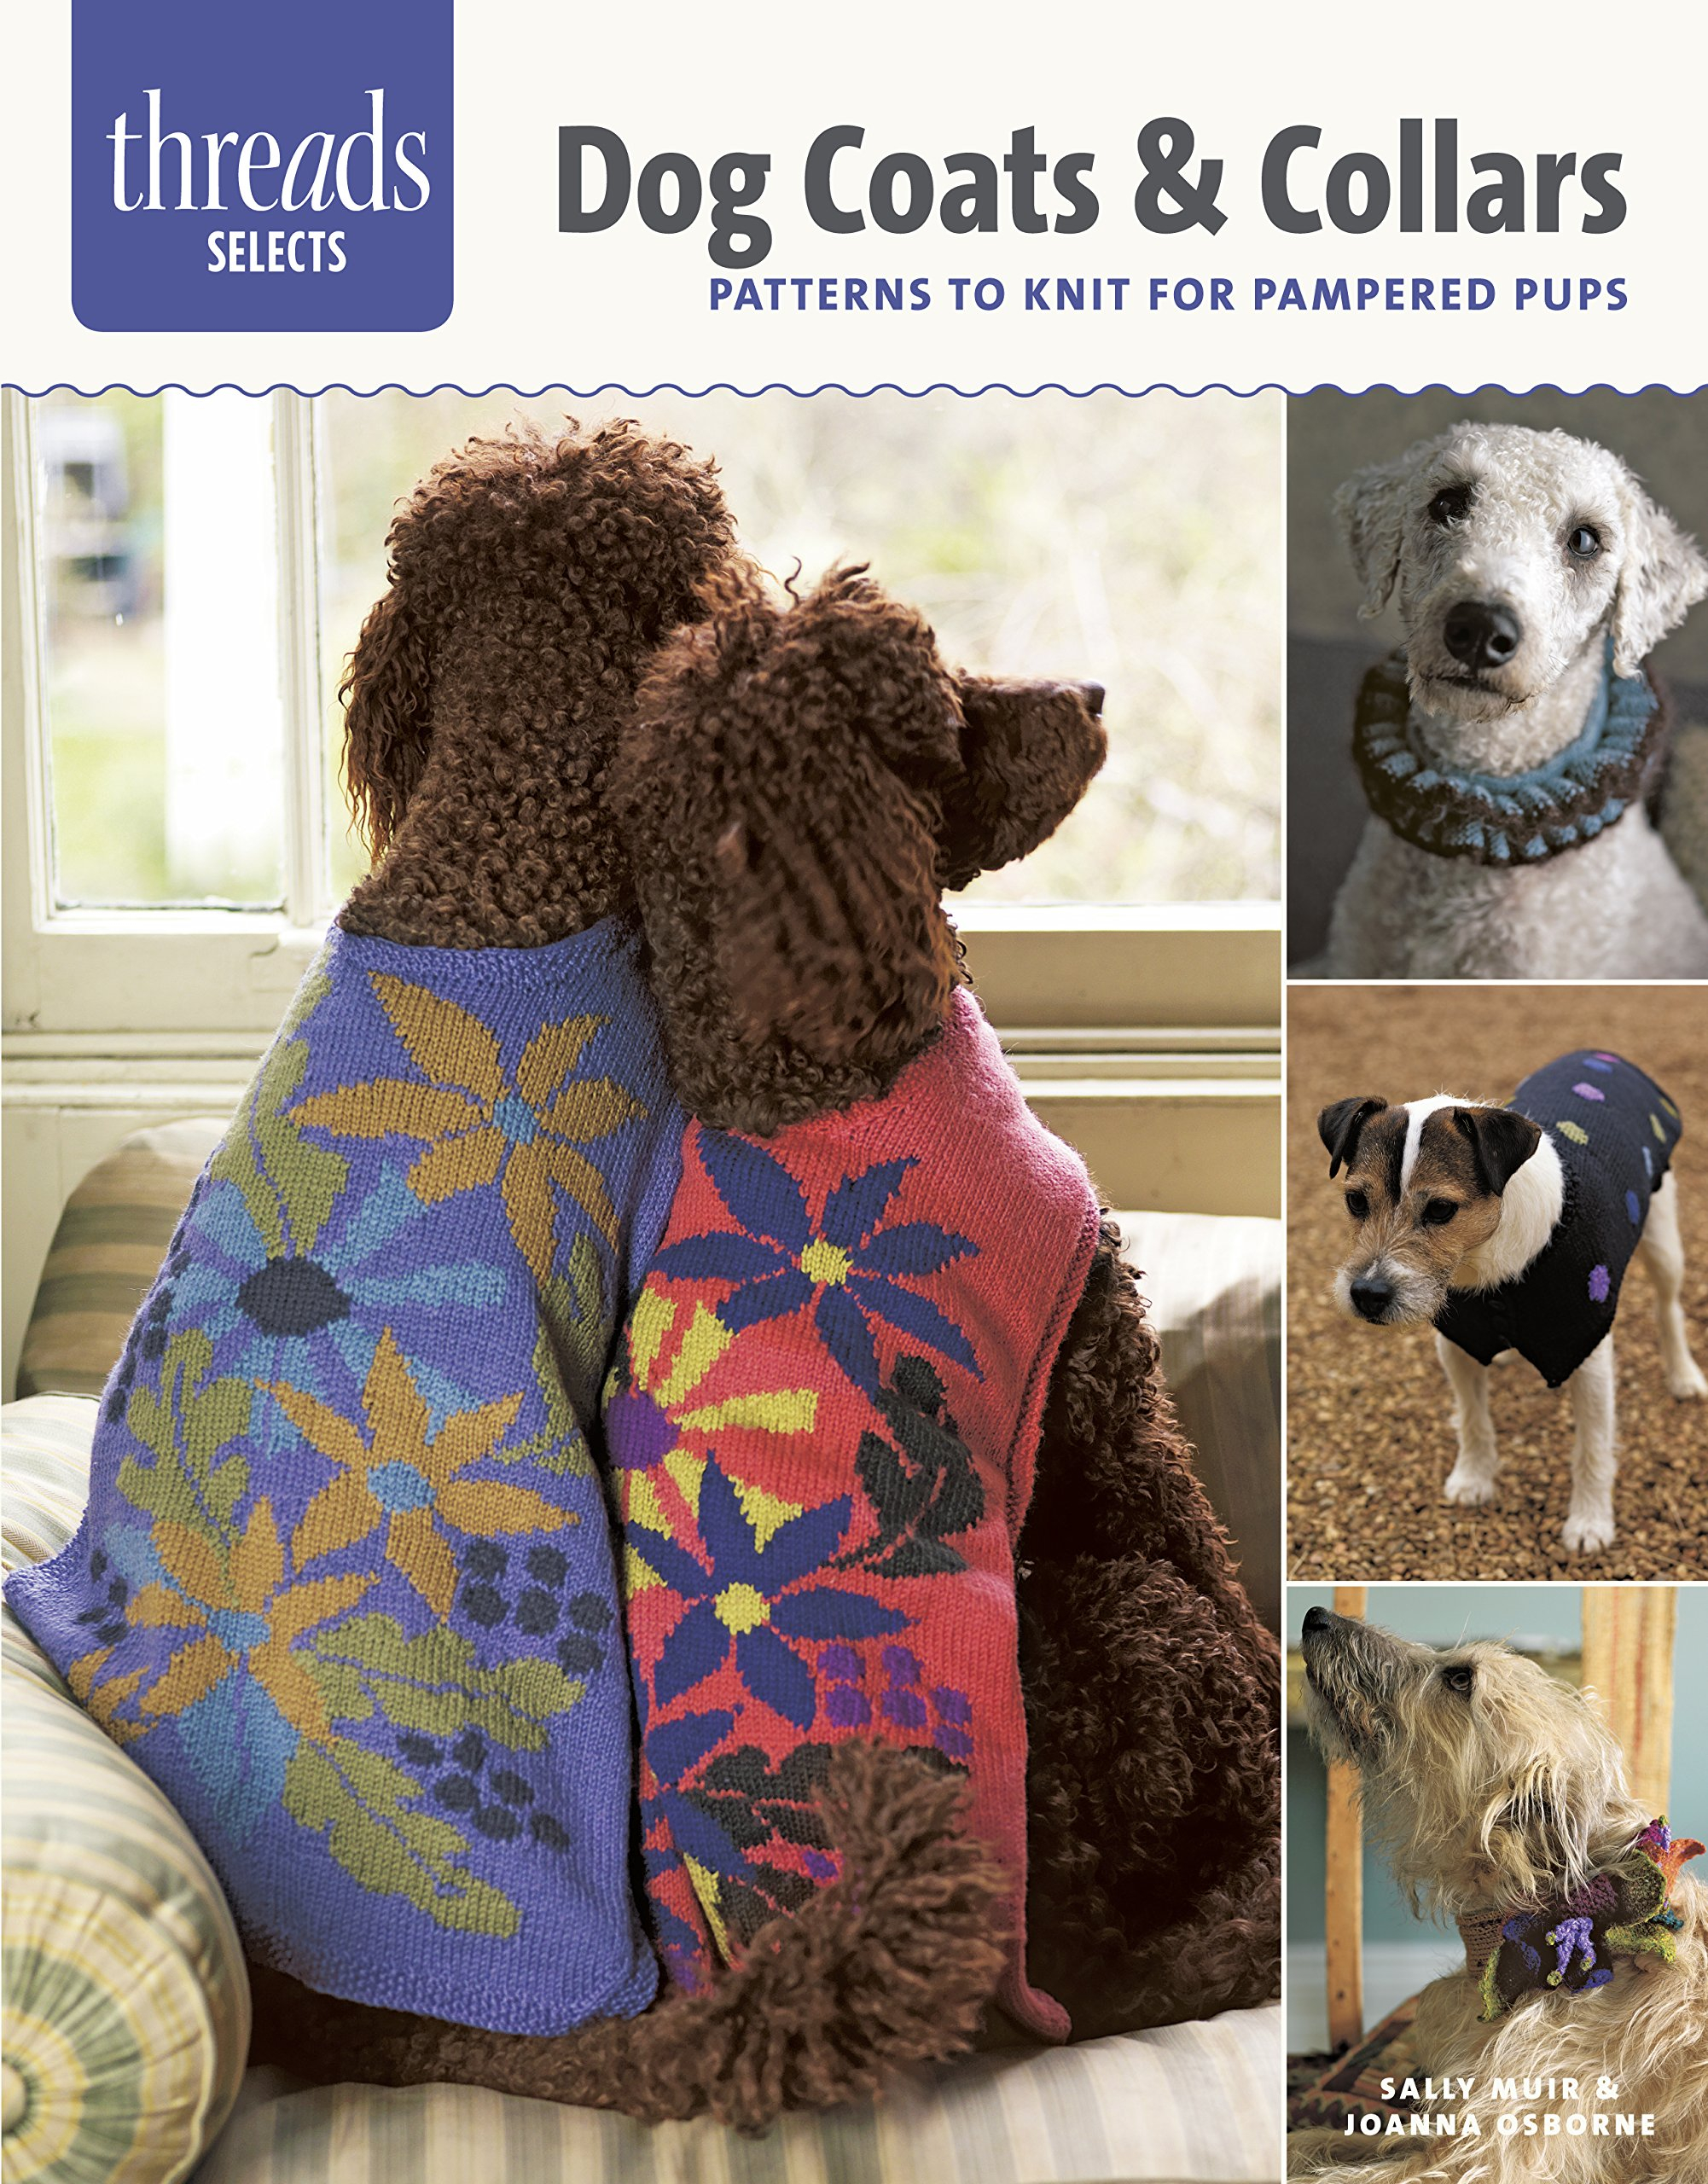 Knitting Patterns Dog Coats Knitting Patterns Dog Sweaters Browse Patterns